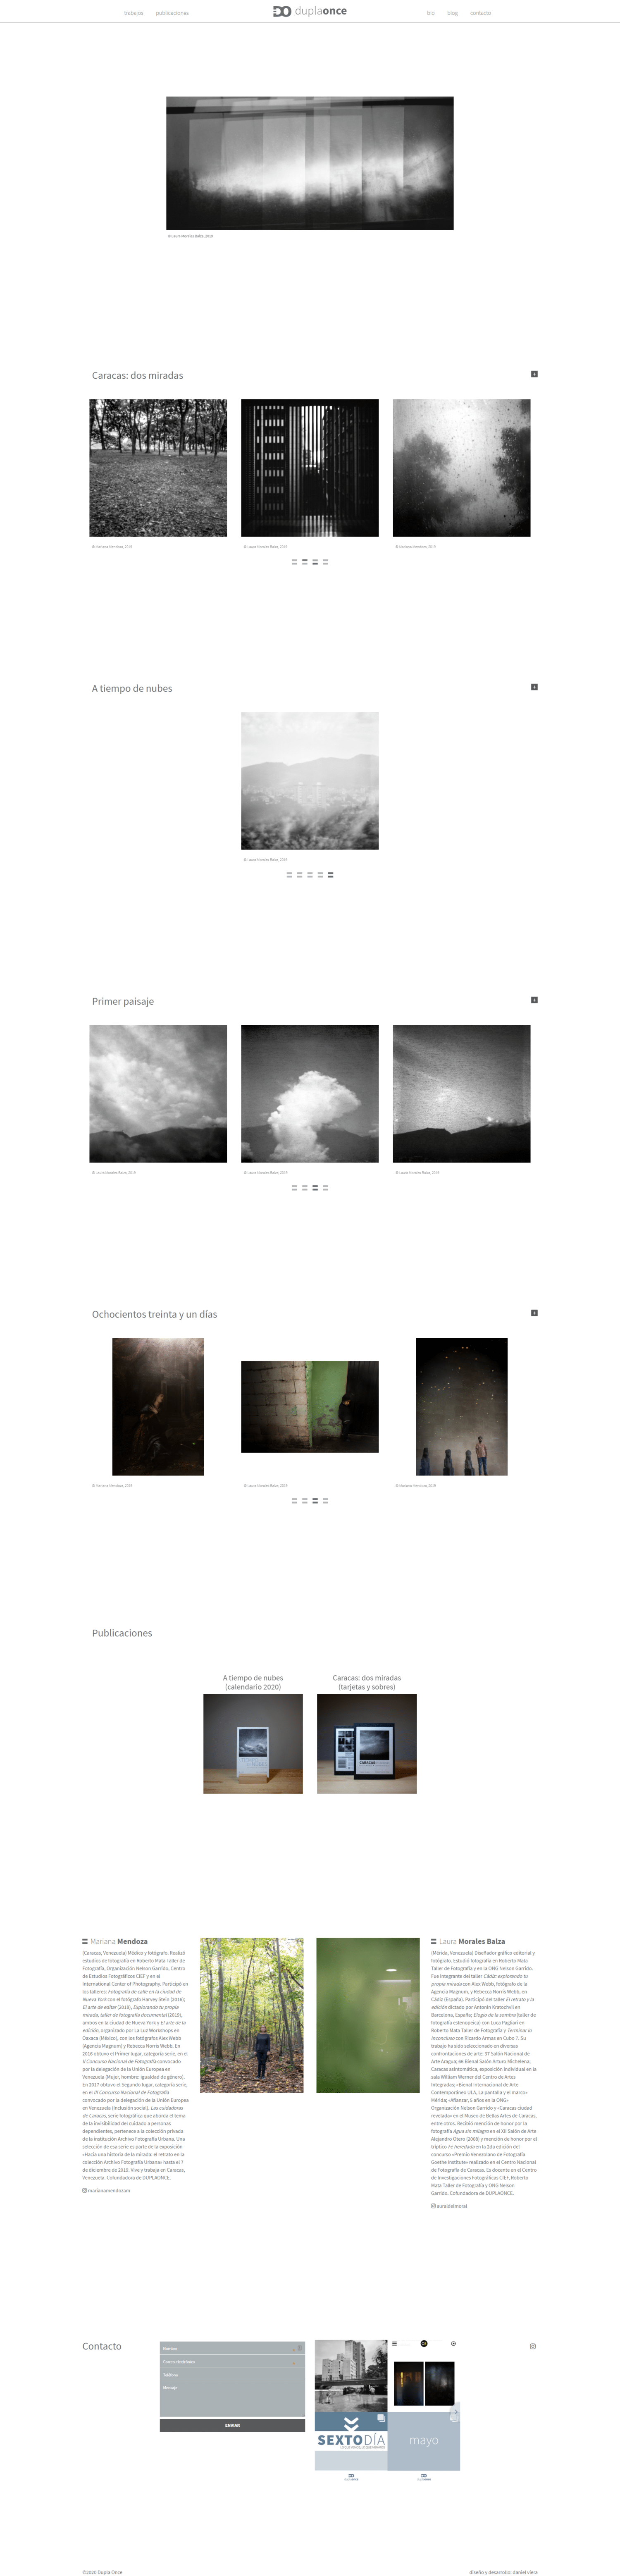 Duplaonce | Nuevo sitio web para una dupla de artistas que hacen fotografía estenopéica. Realizado en WordPress con bootstrap 4 y sass. Responsive, con scroll infinito y mansory.